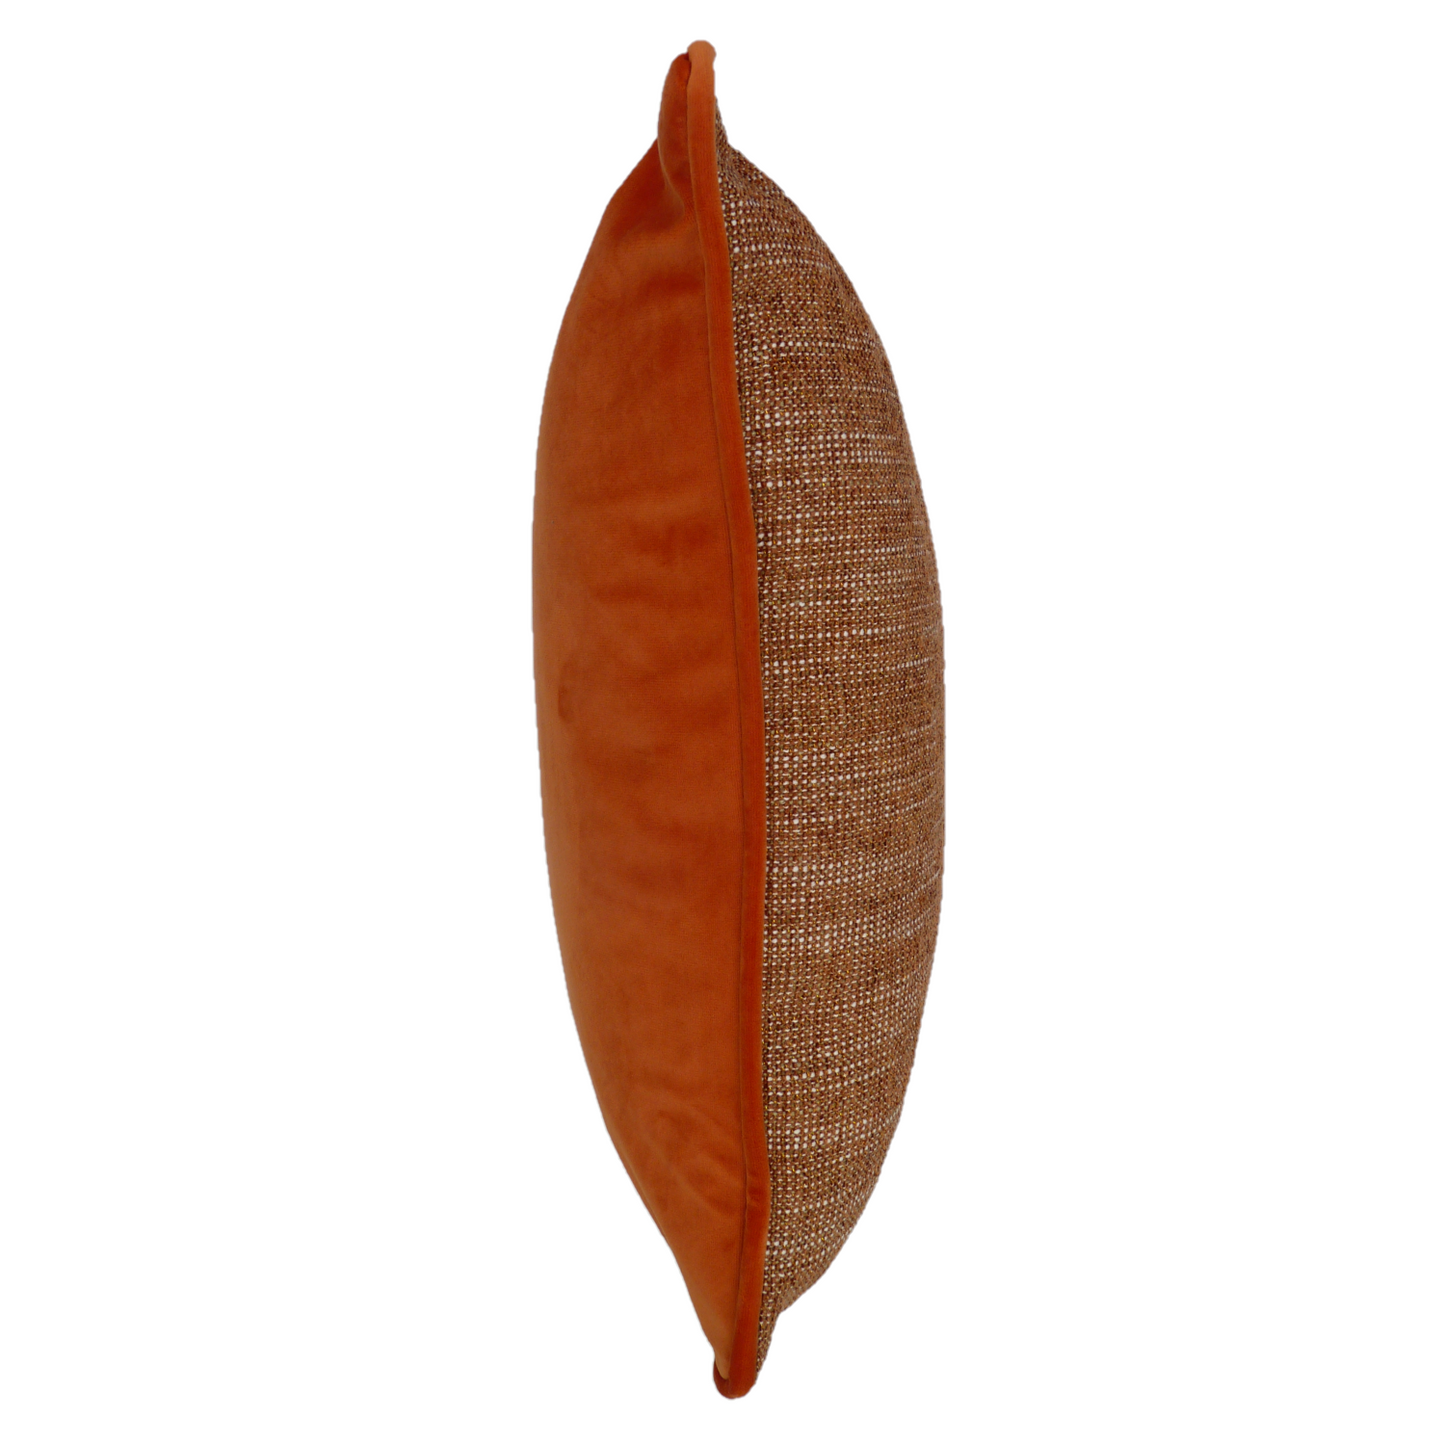 Polaris Orange Textured Weave Velvet Cushion Cover (45cm x 45cm)